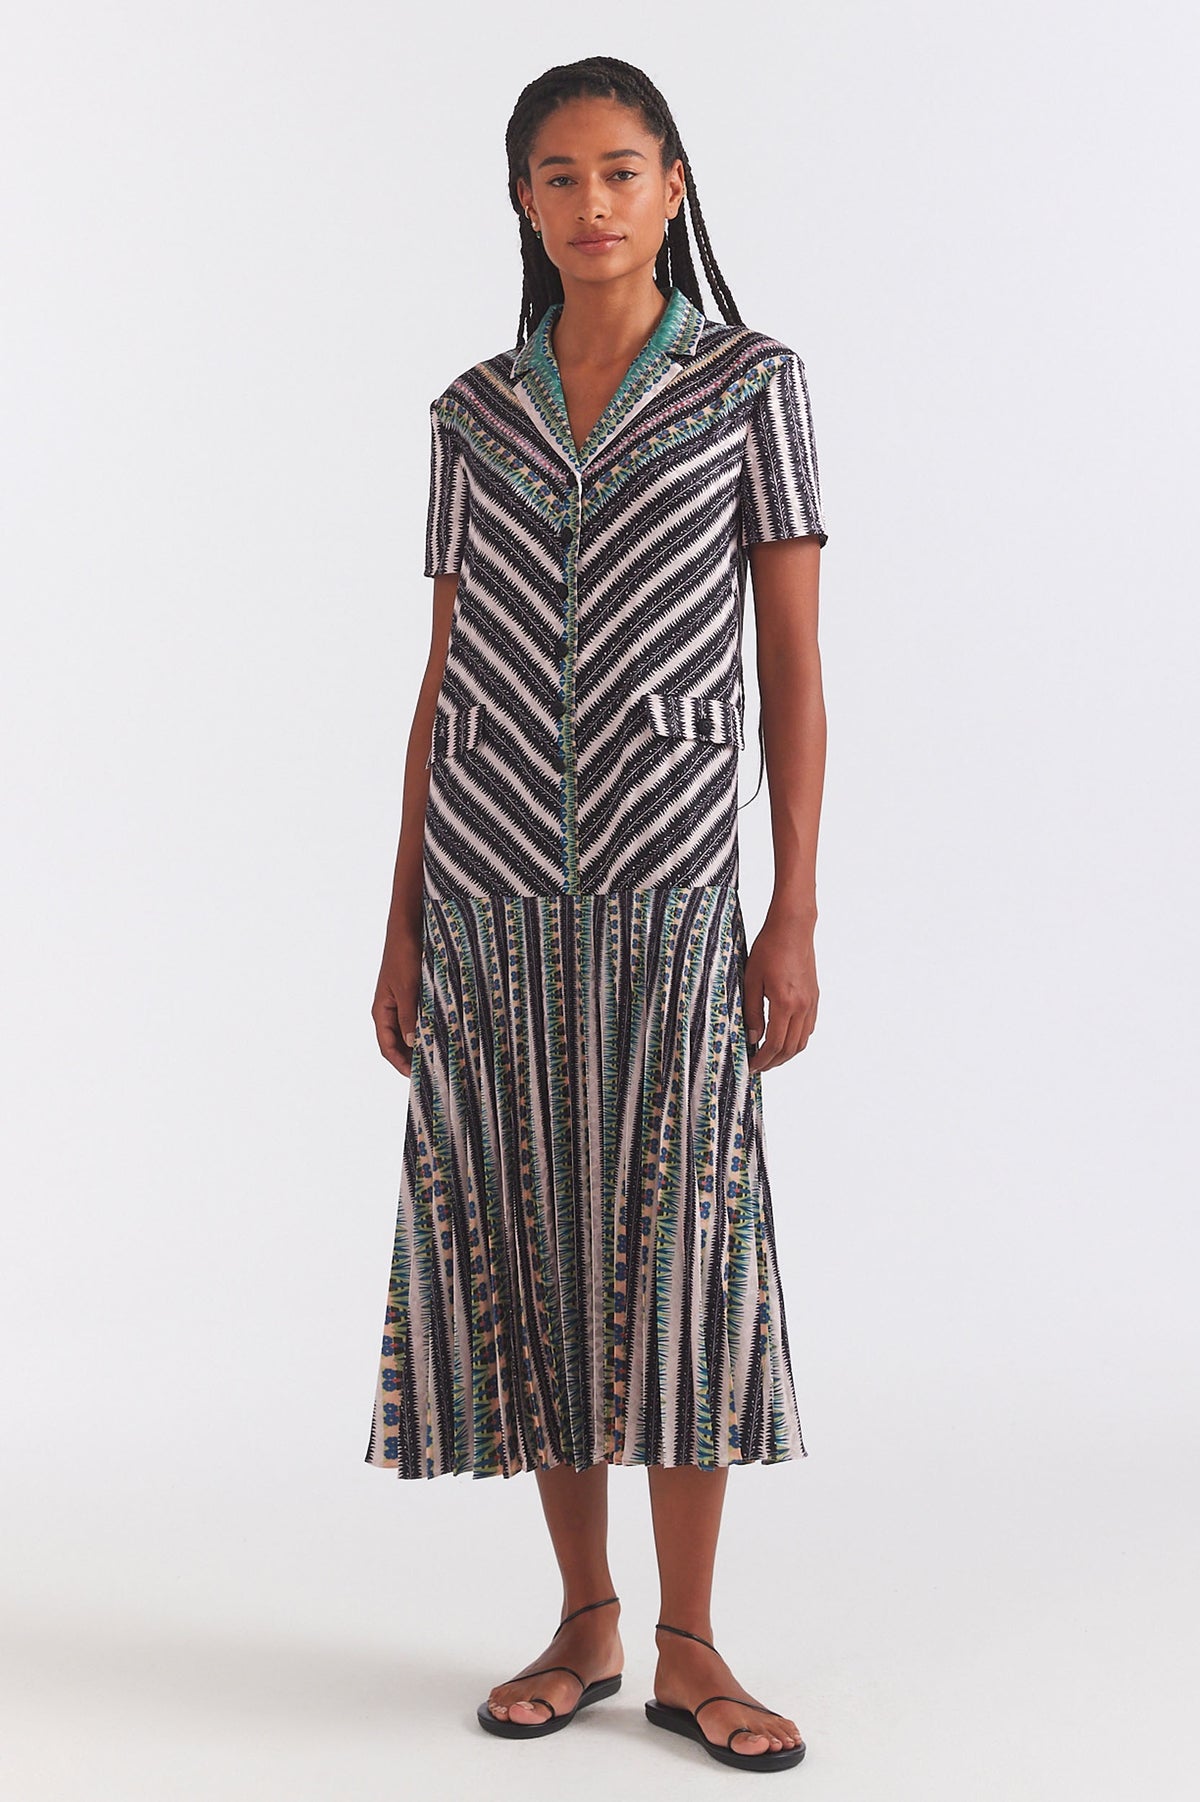 Sonia-C Dress in Pothos Stripe